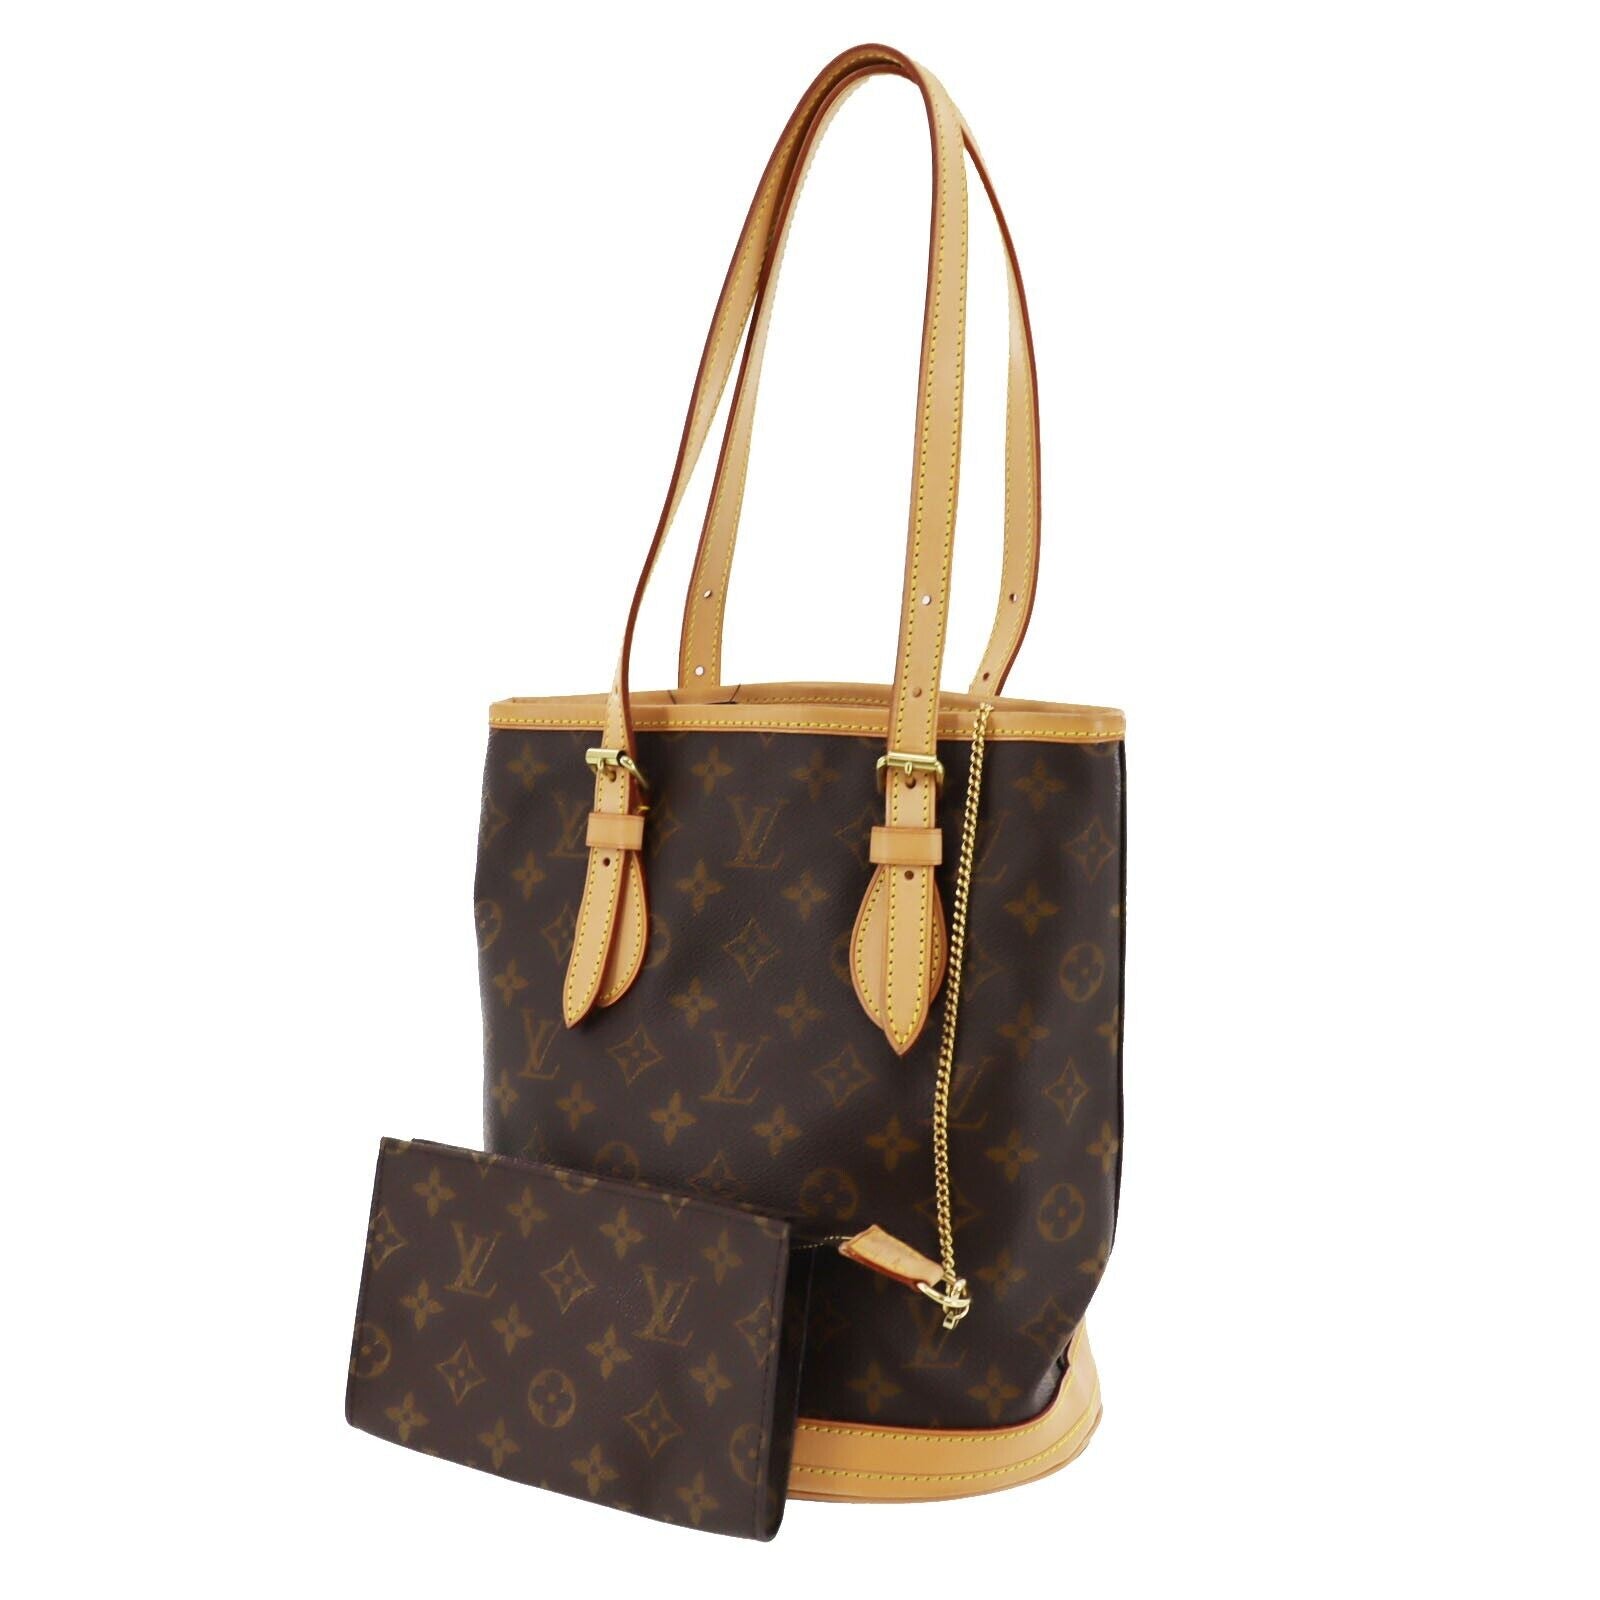 Sold at Auction: Louis Vuitton, LOUIS VUITTON Handbag BERGAMO PM